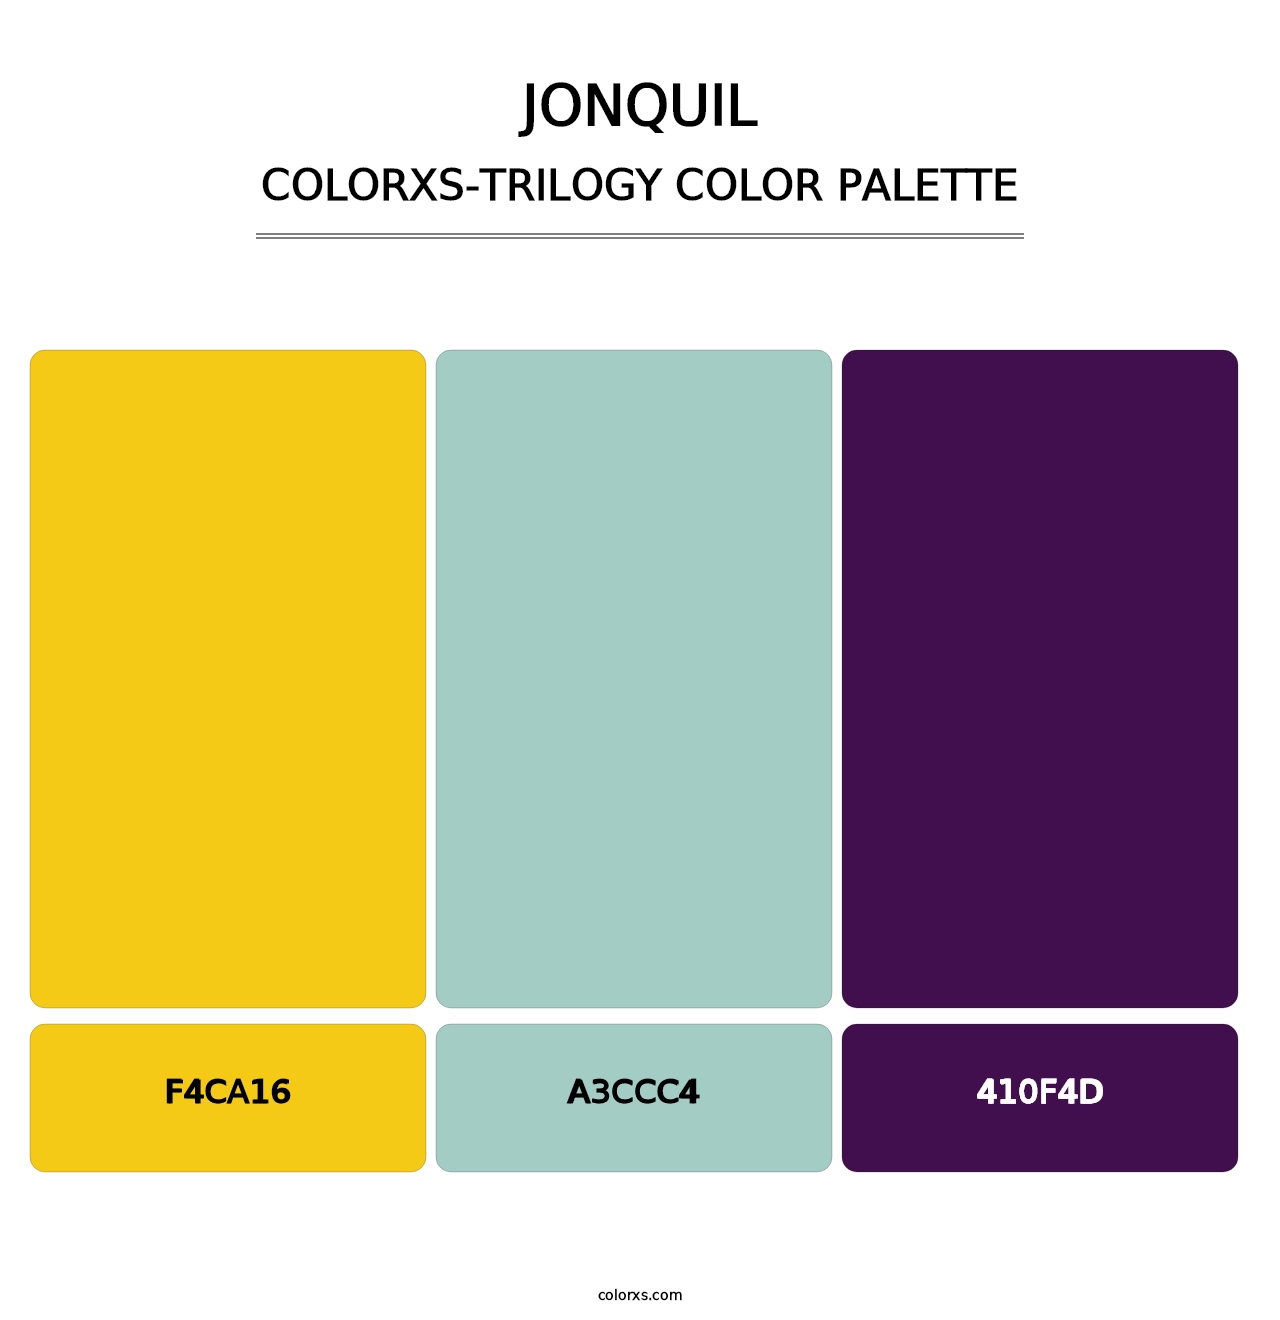 Jonquil - Colorxs Trilogy Palette